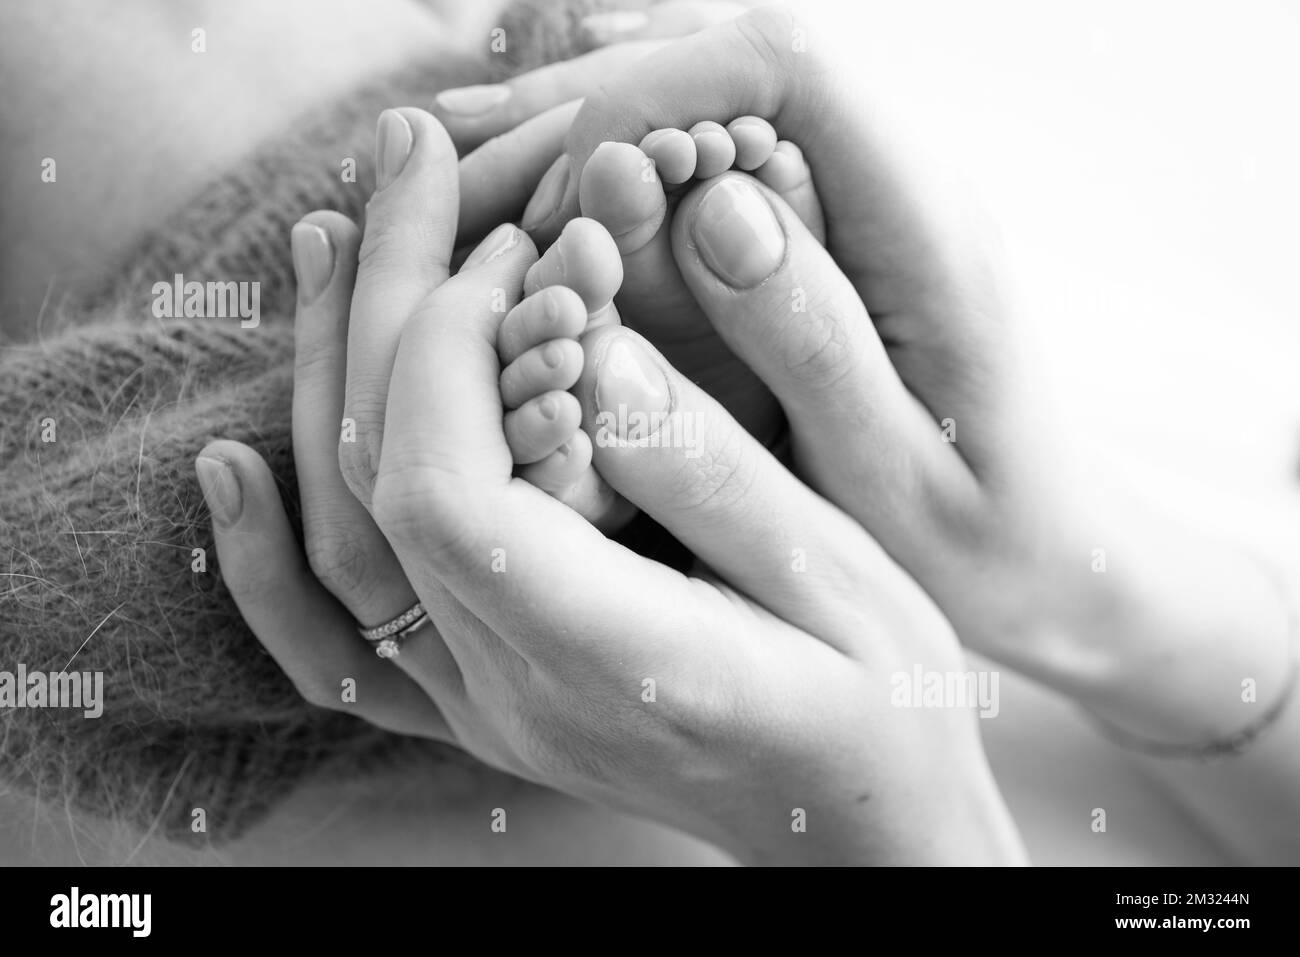 Gambe, dita dei piedi, piedi e talloni di un neonato. Le mani della madre tengono le gambe del bambino. Foto Stock